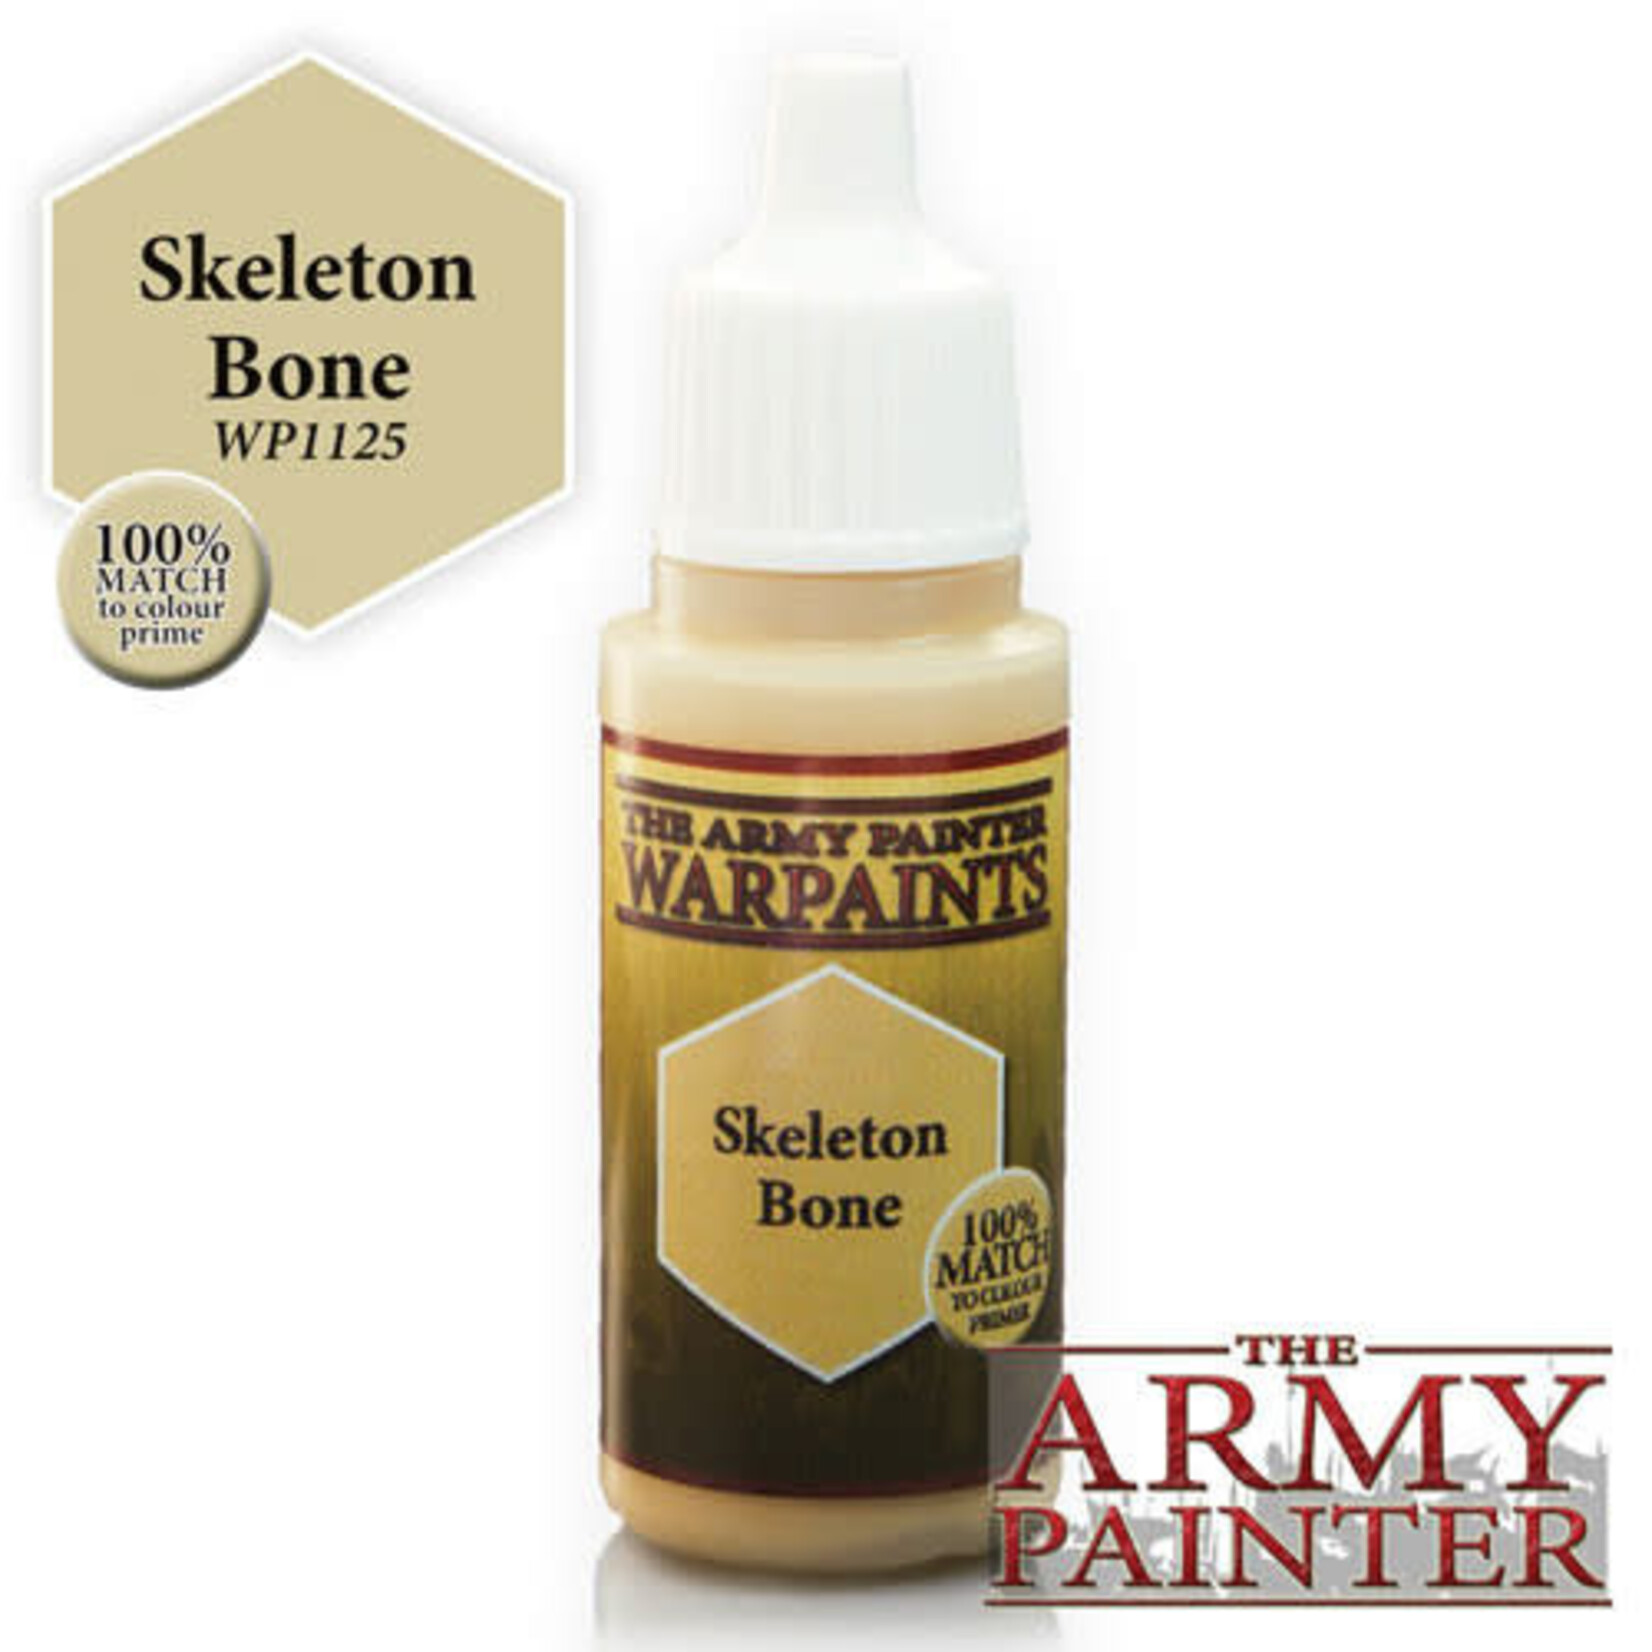 The Army Painter Warpaints: Skeleton Bone 18ml